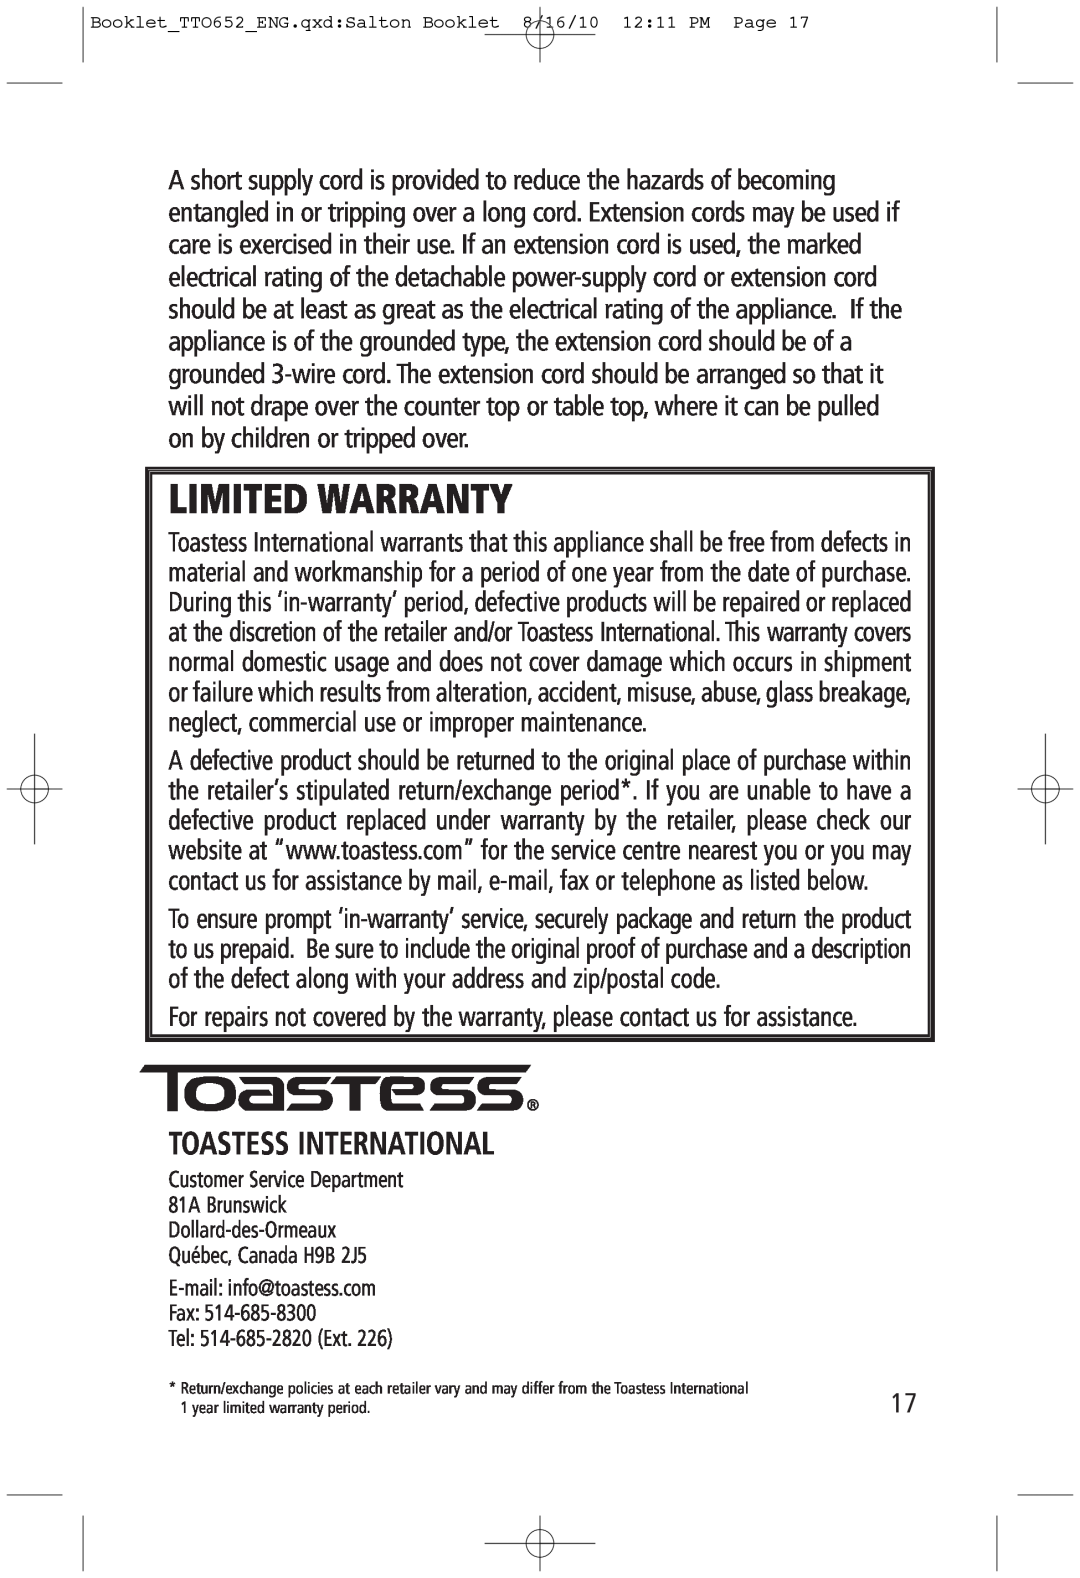 Toastess TTO652 manual Toastess International, Limited Warranty 